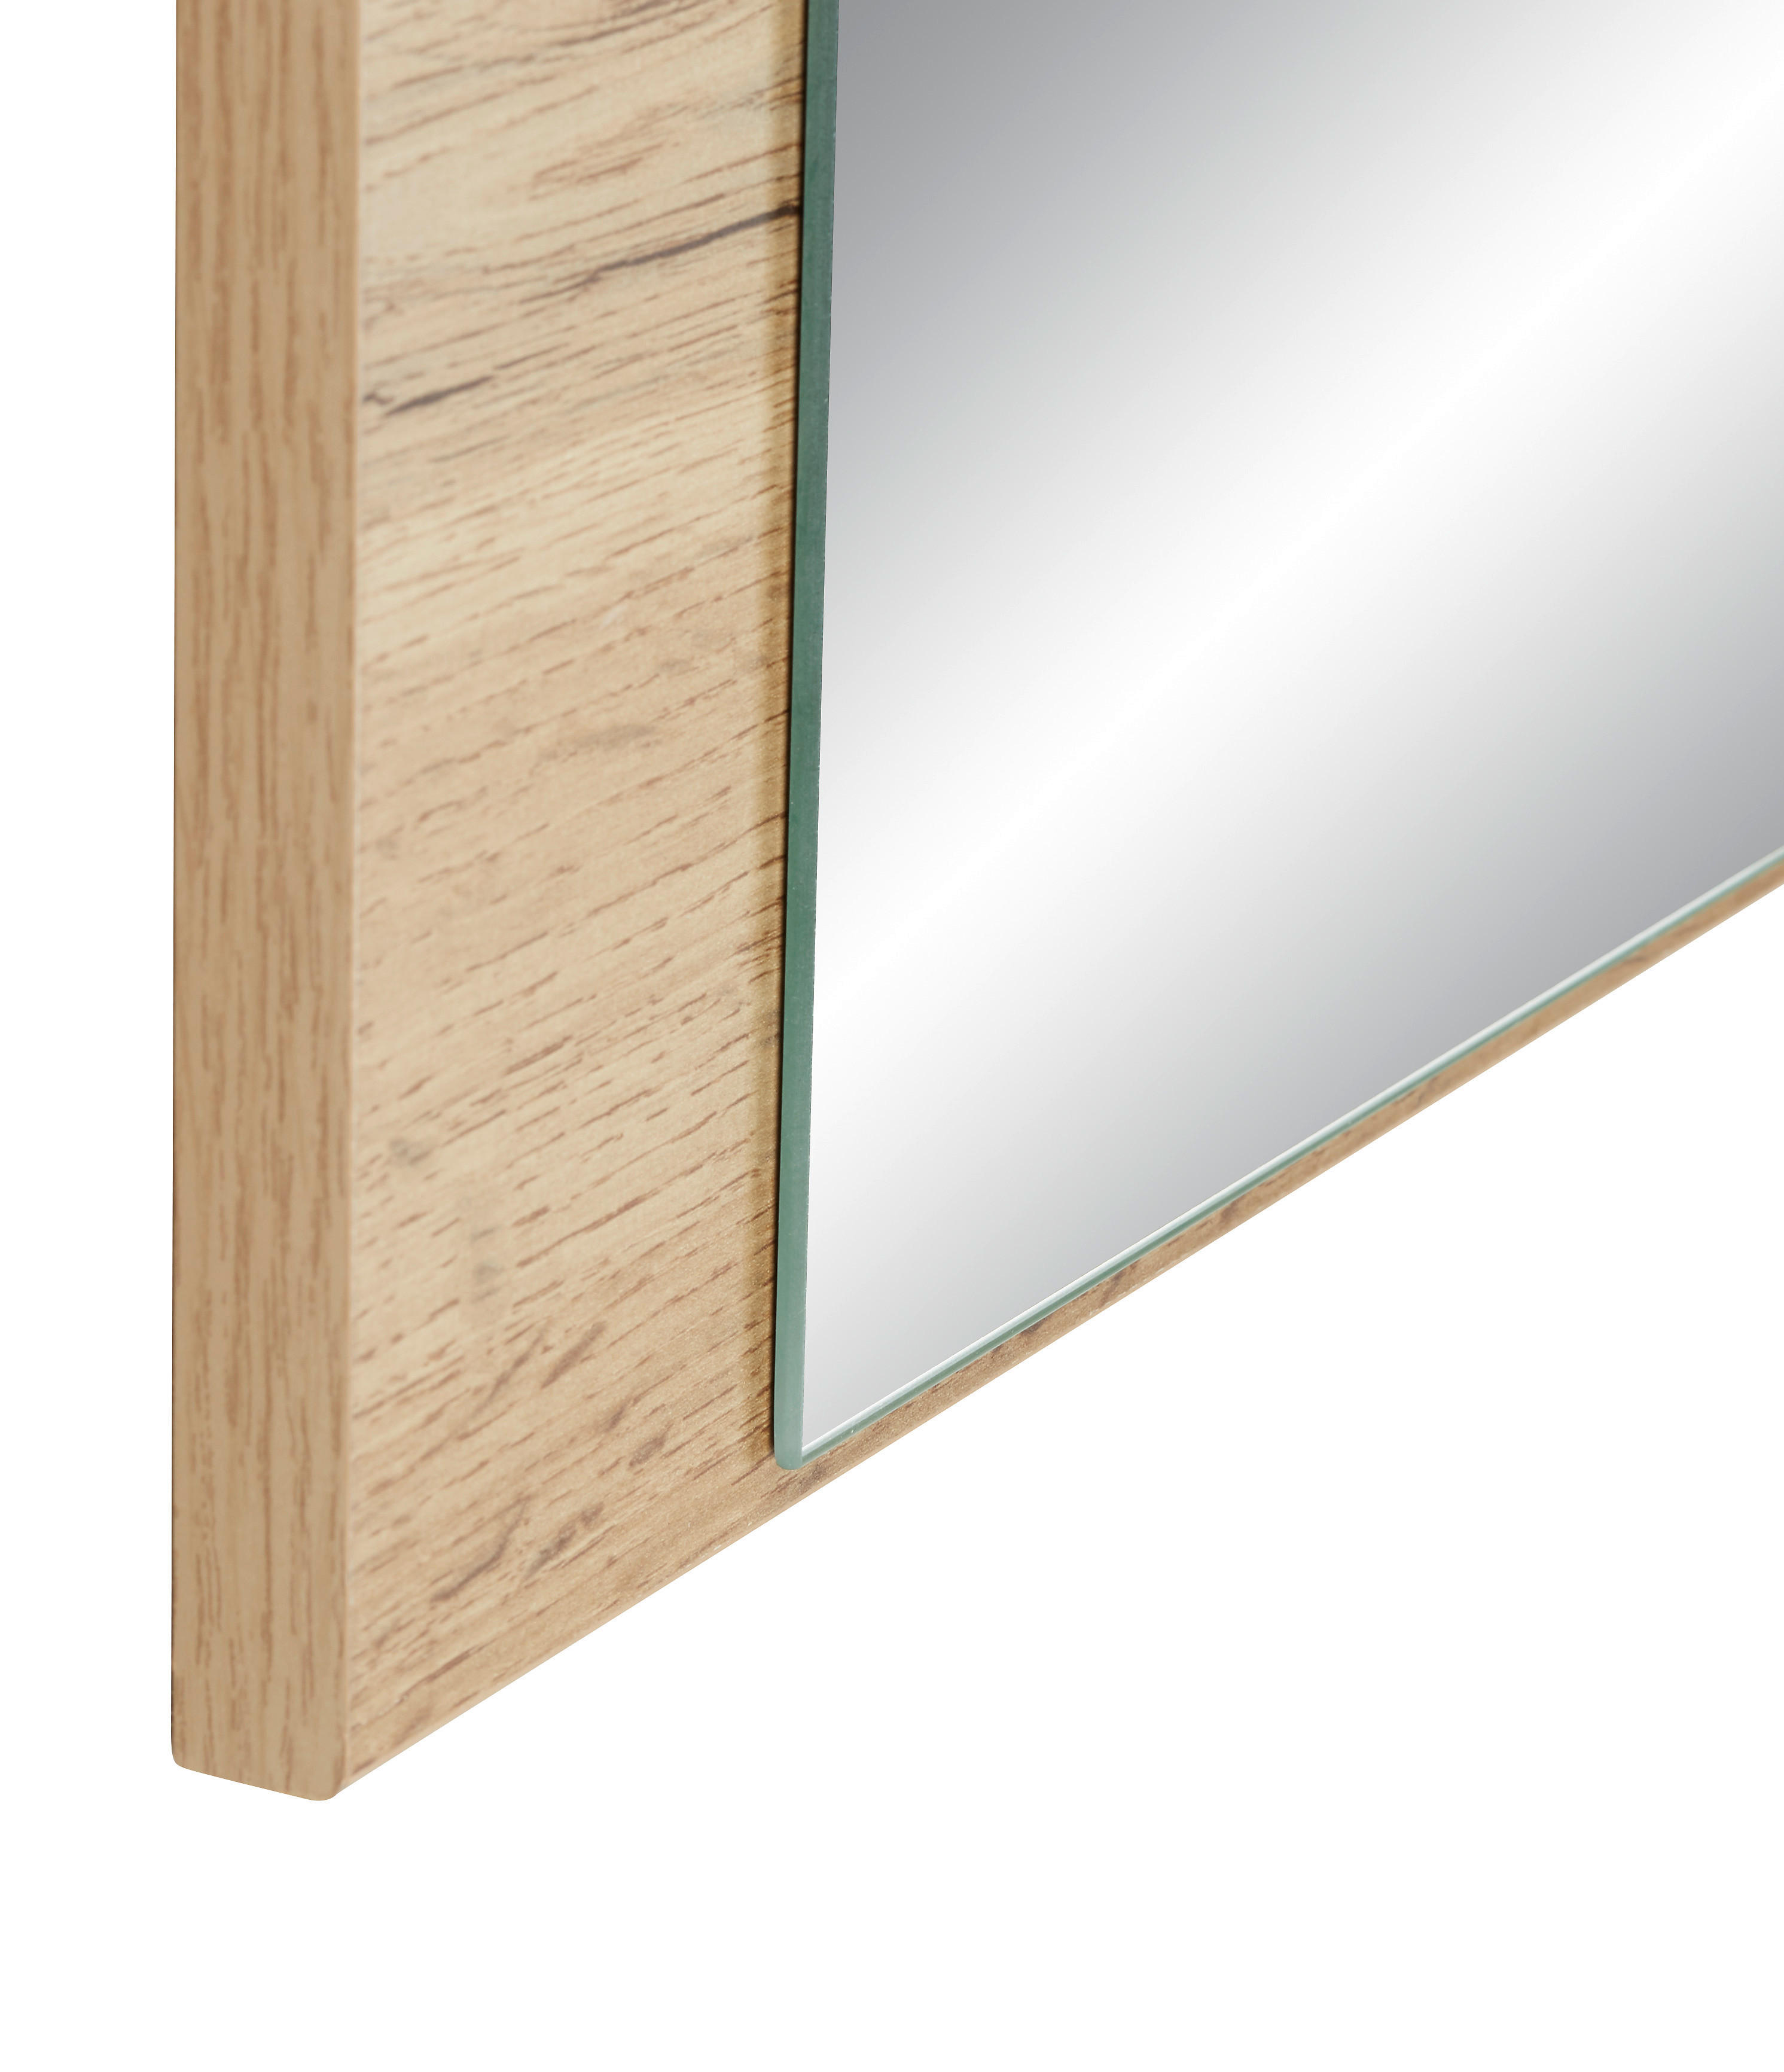 OGLEDALO, 75/85/2 cm leseni material  - barve hrasta, Konvencionalno, leseni material (75/85/2cm) - Carryhome